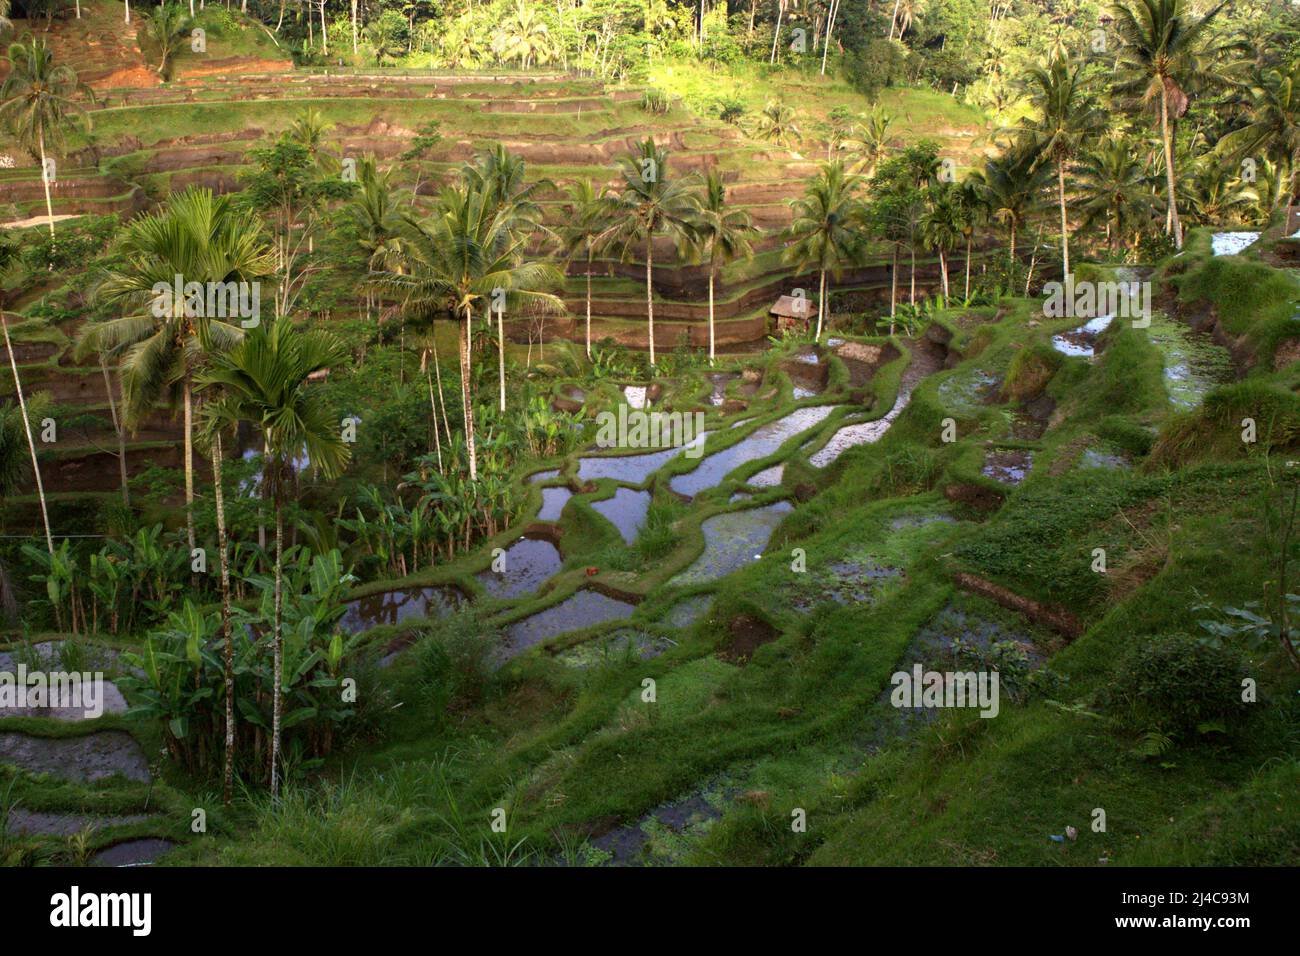 Terrasses de riz arrosées par un système traditionnel et spirituel de gestion de l'eau (irrigation) à Tegallalang, Gianyar, Bali, Indonésie. Banque D'Images